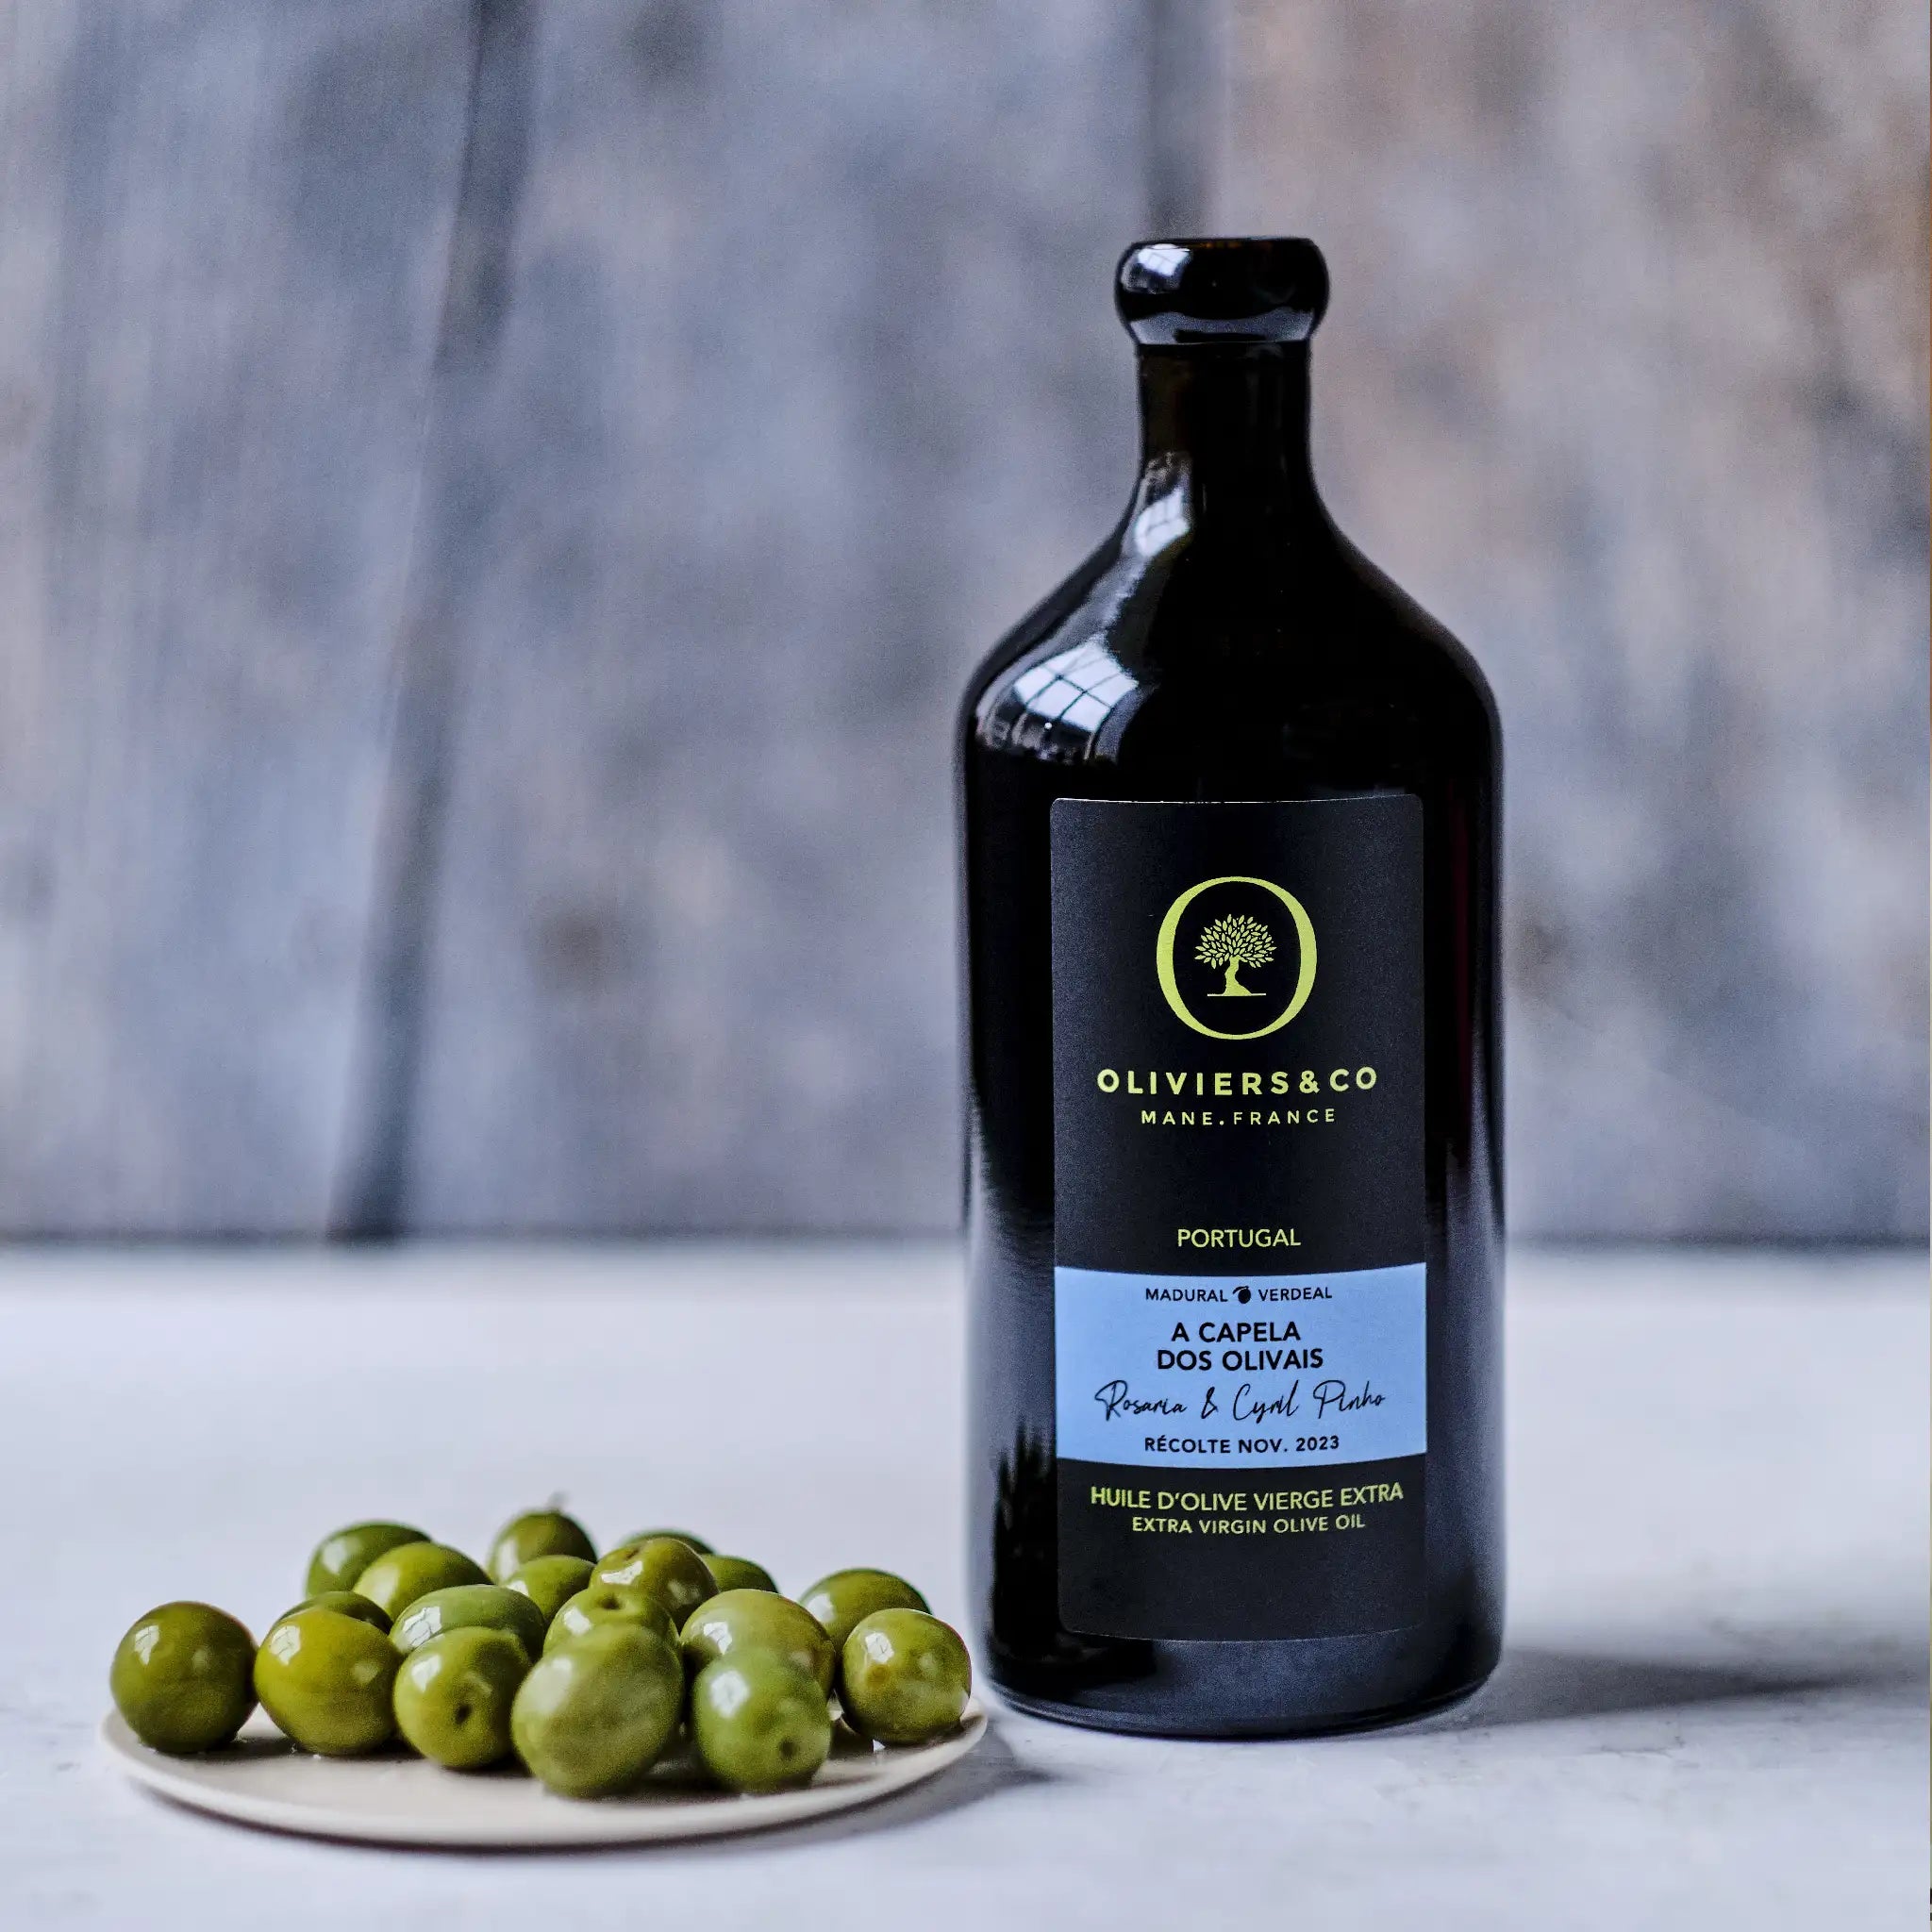 Ekstra jomfru olivenolie fra Portugal, A Capela dos Olivais, Oliviers & Co